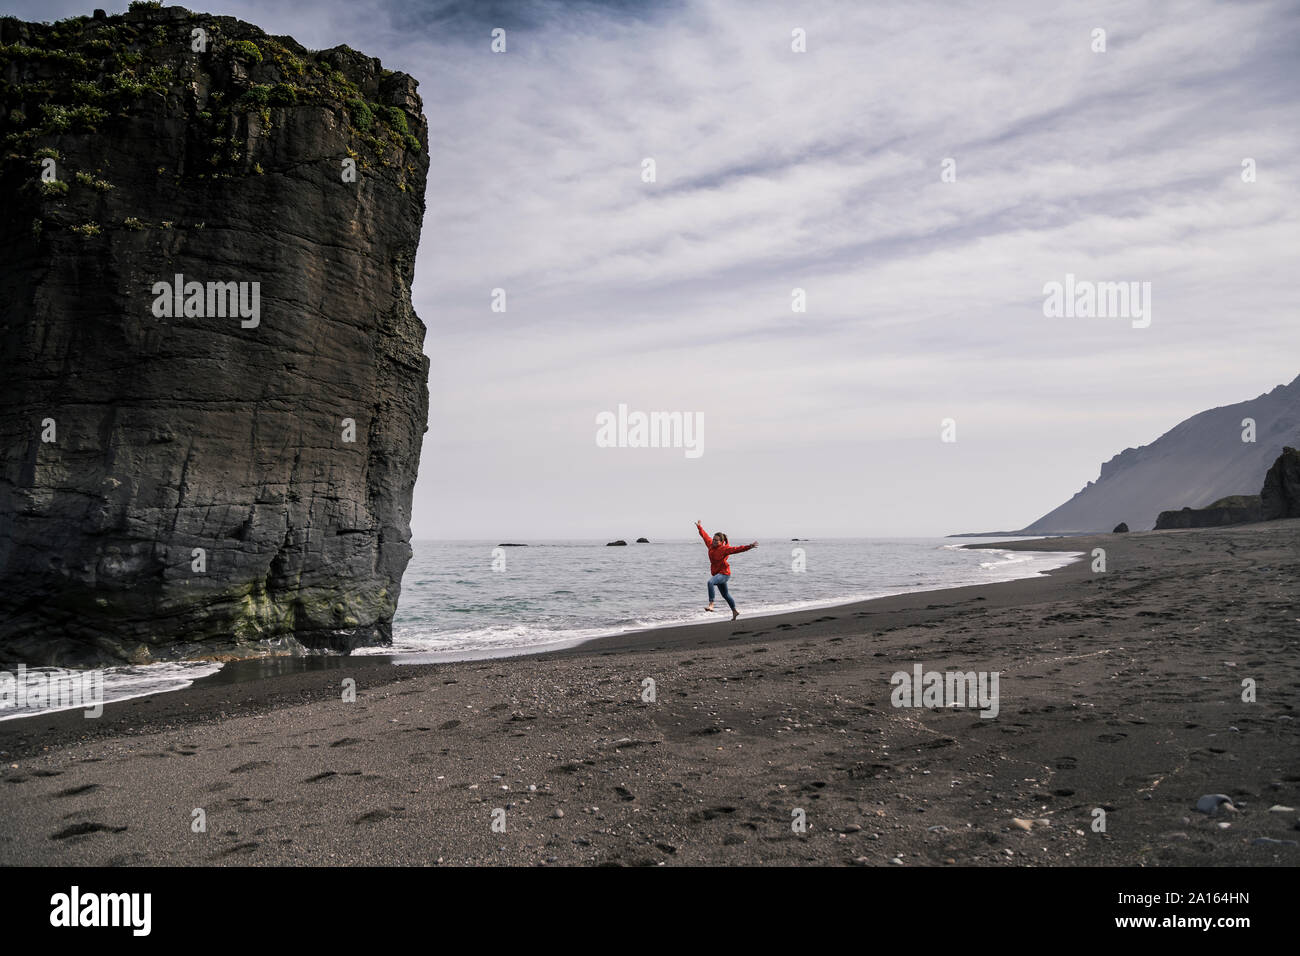 Femme sur une plage dans le sud-est de l'Islande, courir et sauter de joie Banque D'Images